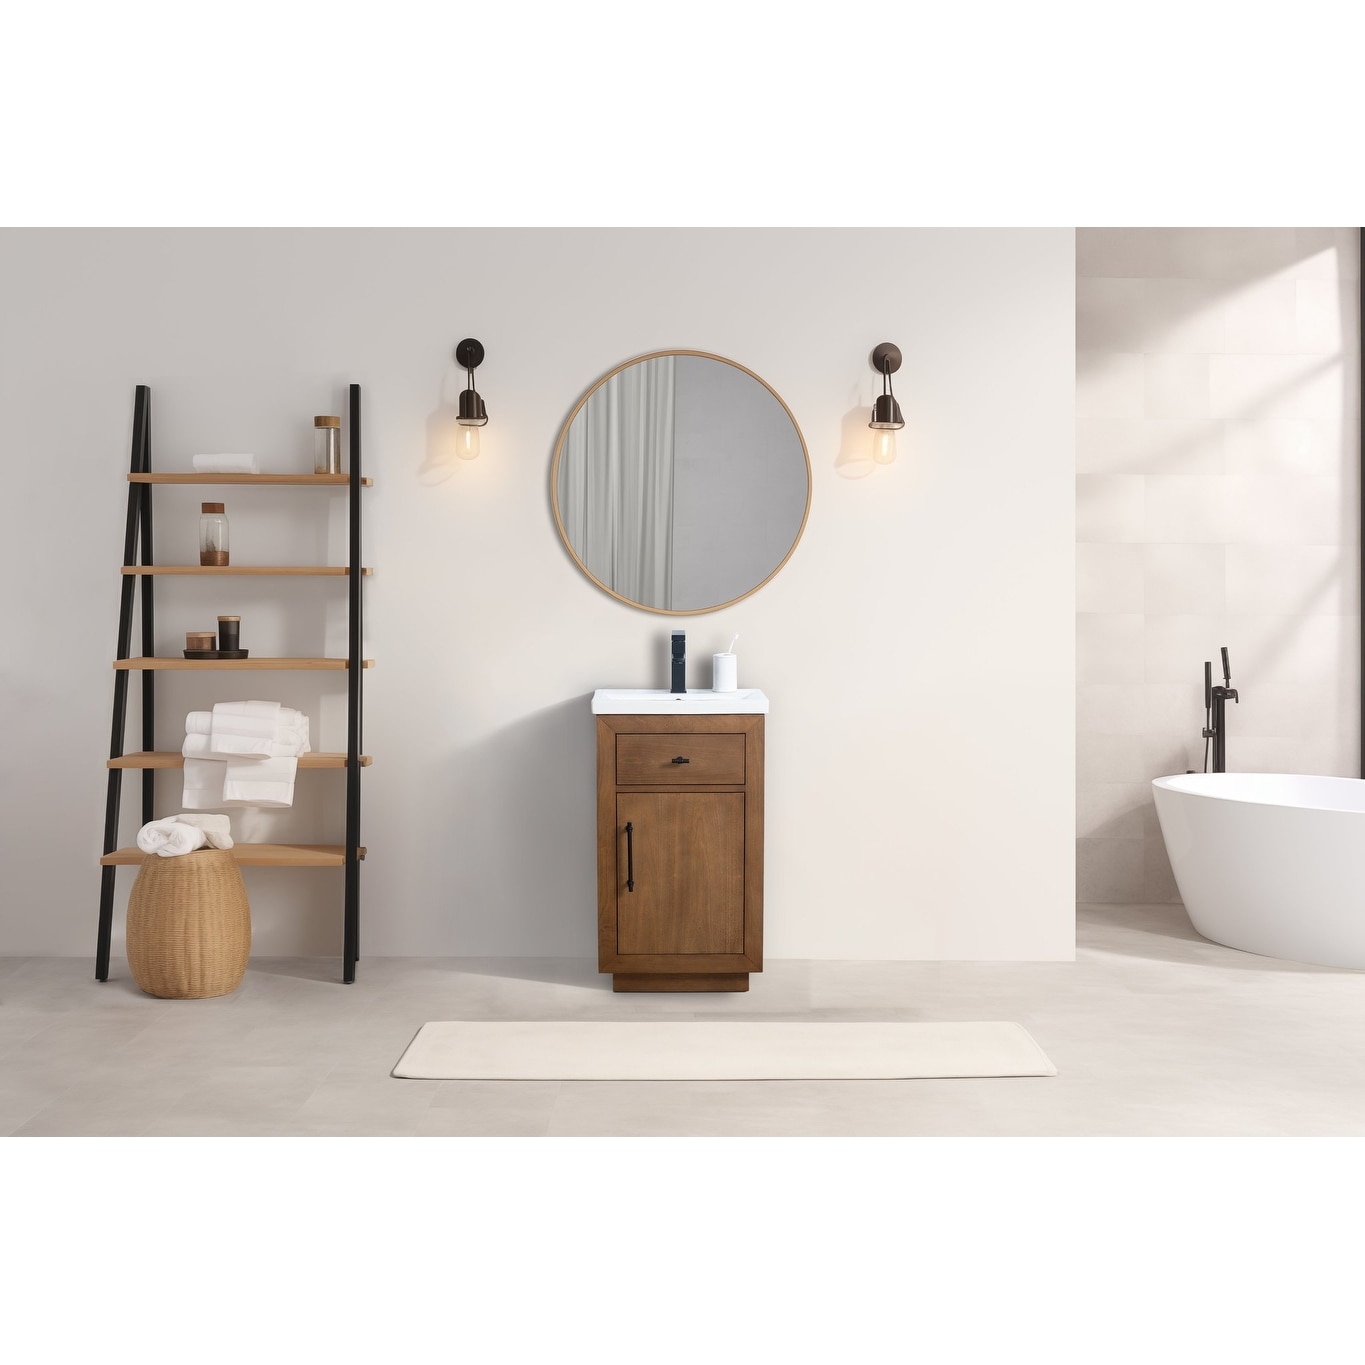 60 in Bathroom Vanities - Bed Bath & Beyond